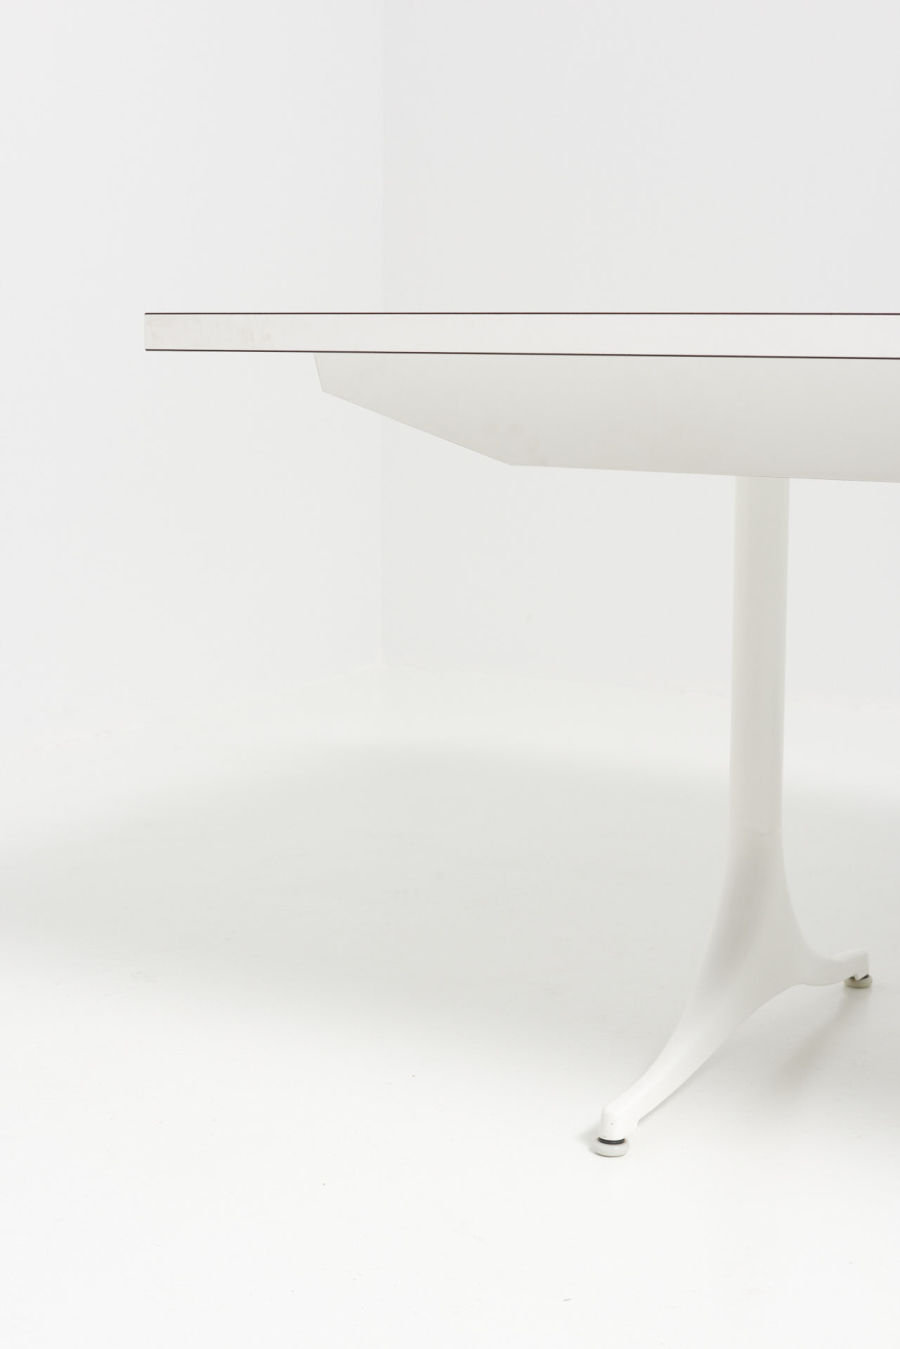 modestfurniture-vintage-2993-pedestal-extension-table-5559-george-nelson-herman-miller10